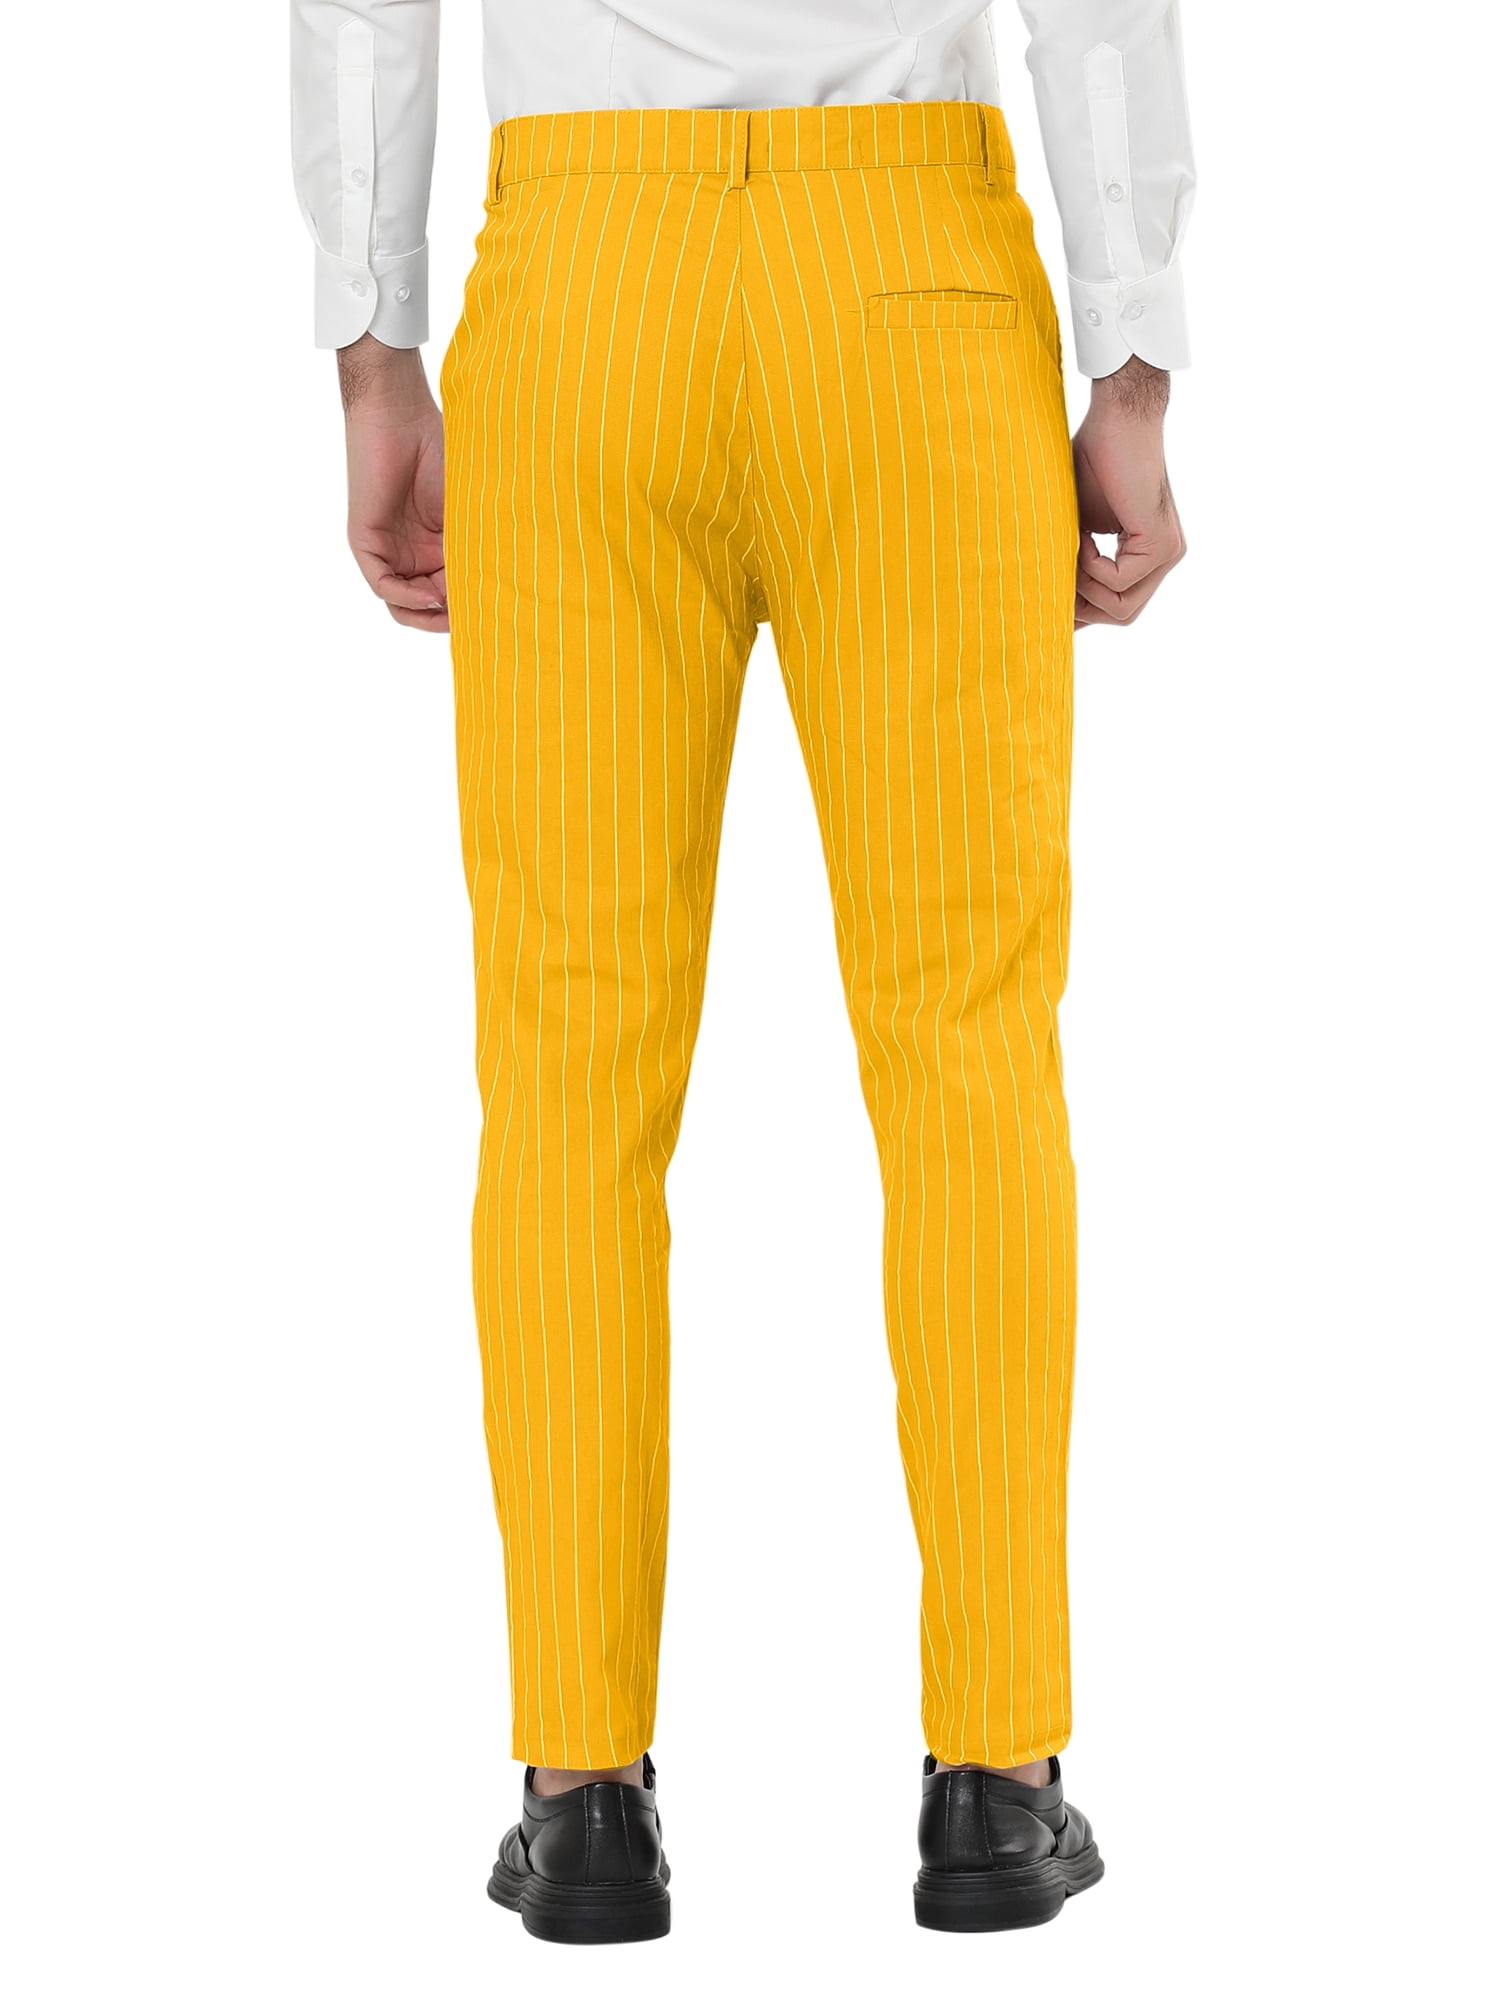 Lars Amadeus Men's Striped Dress Pants Flat Front Trousers